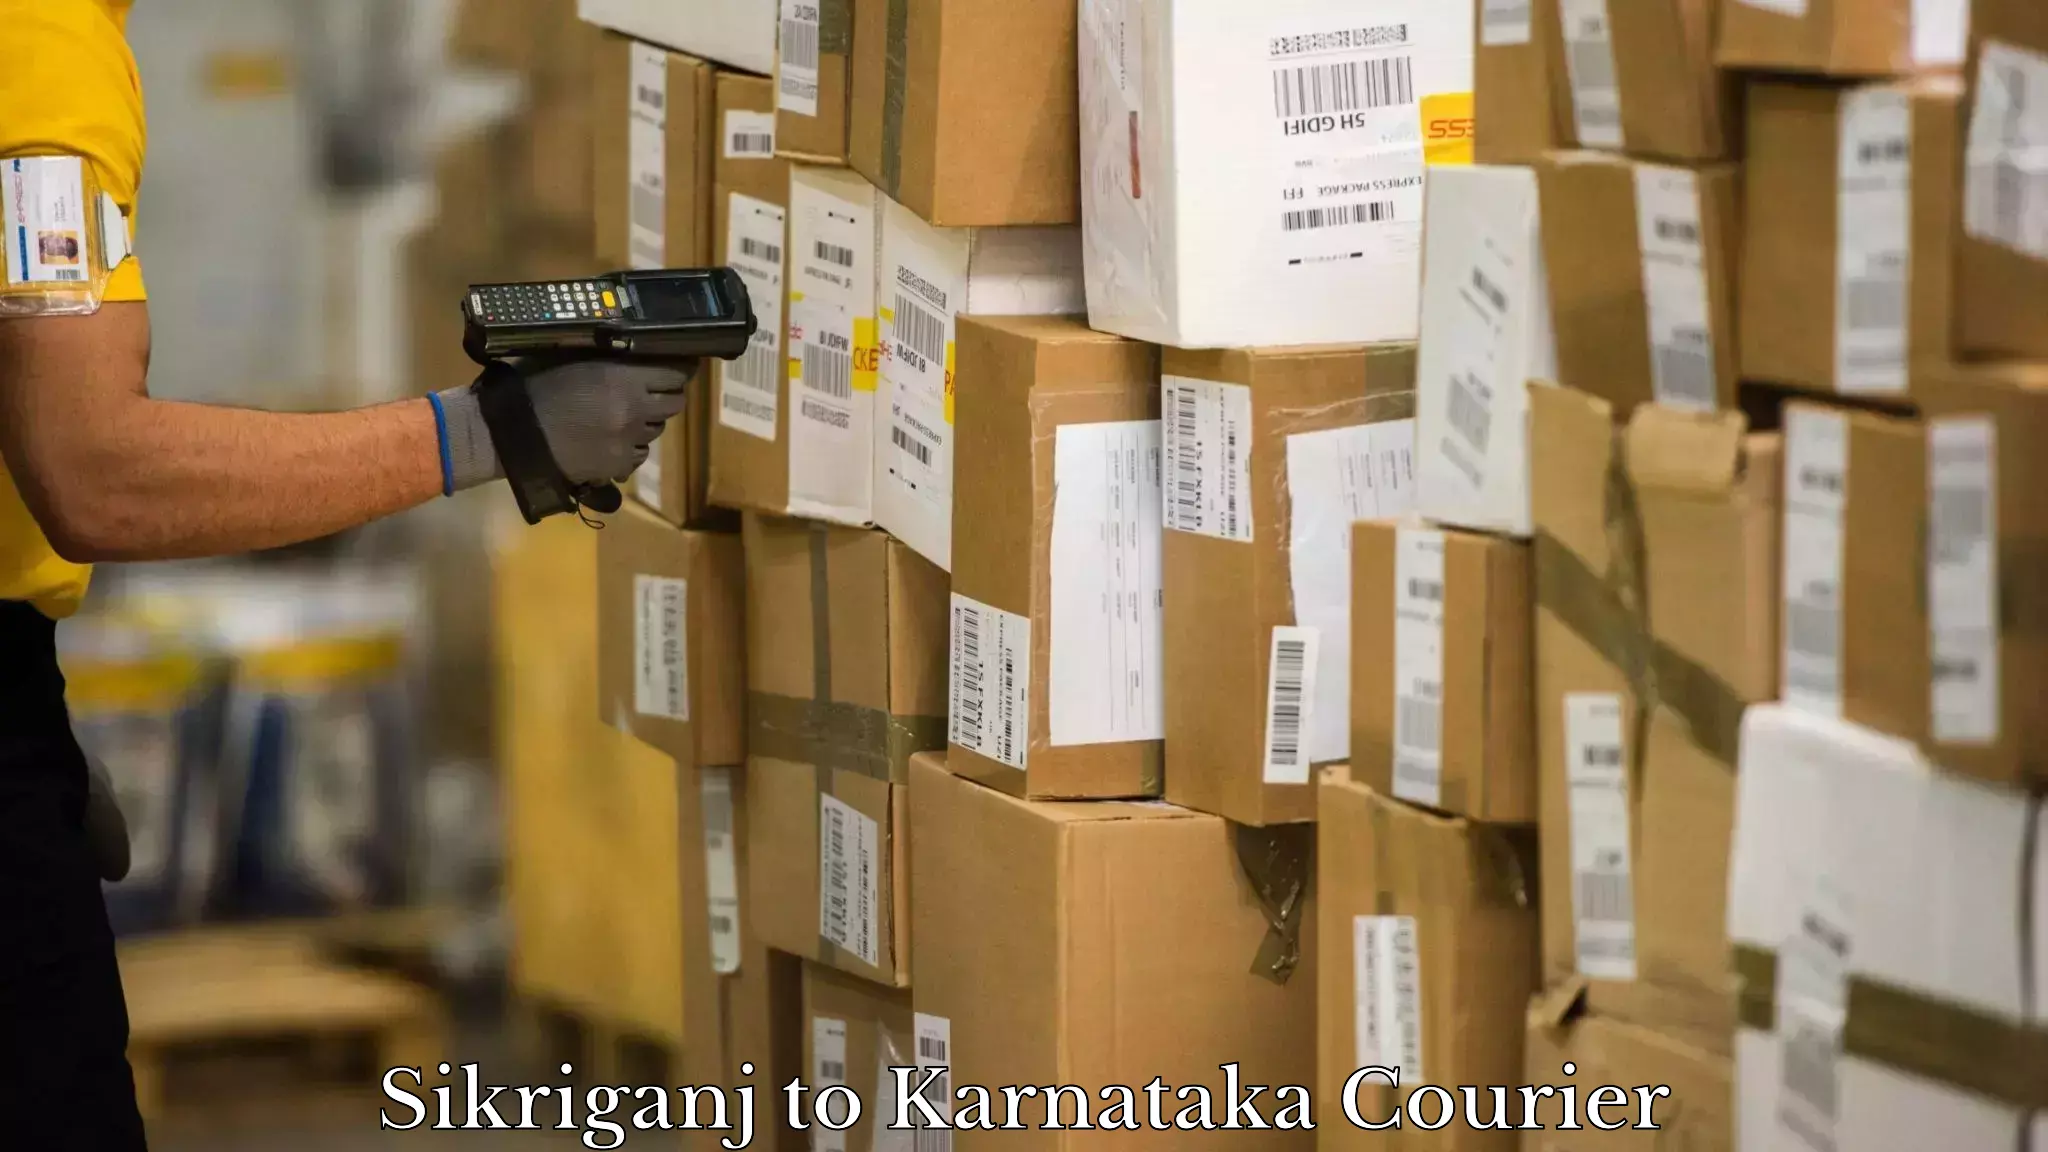 Digital courier platforms Sikriganj to Karnataka